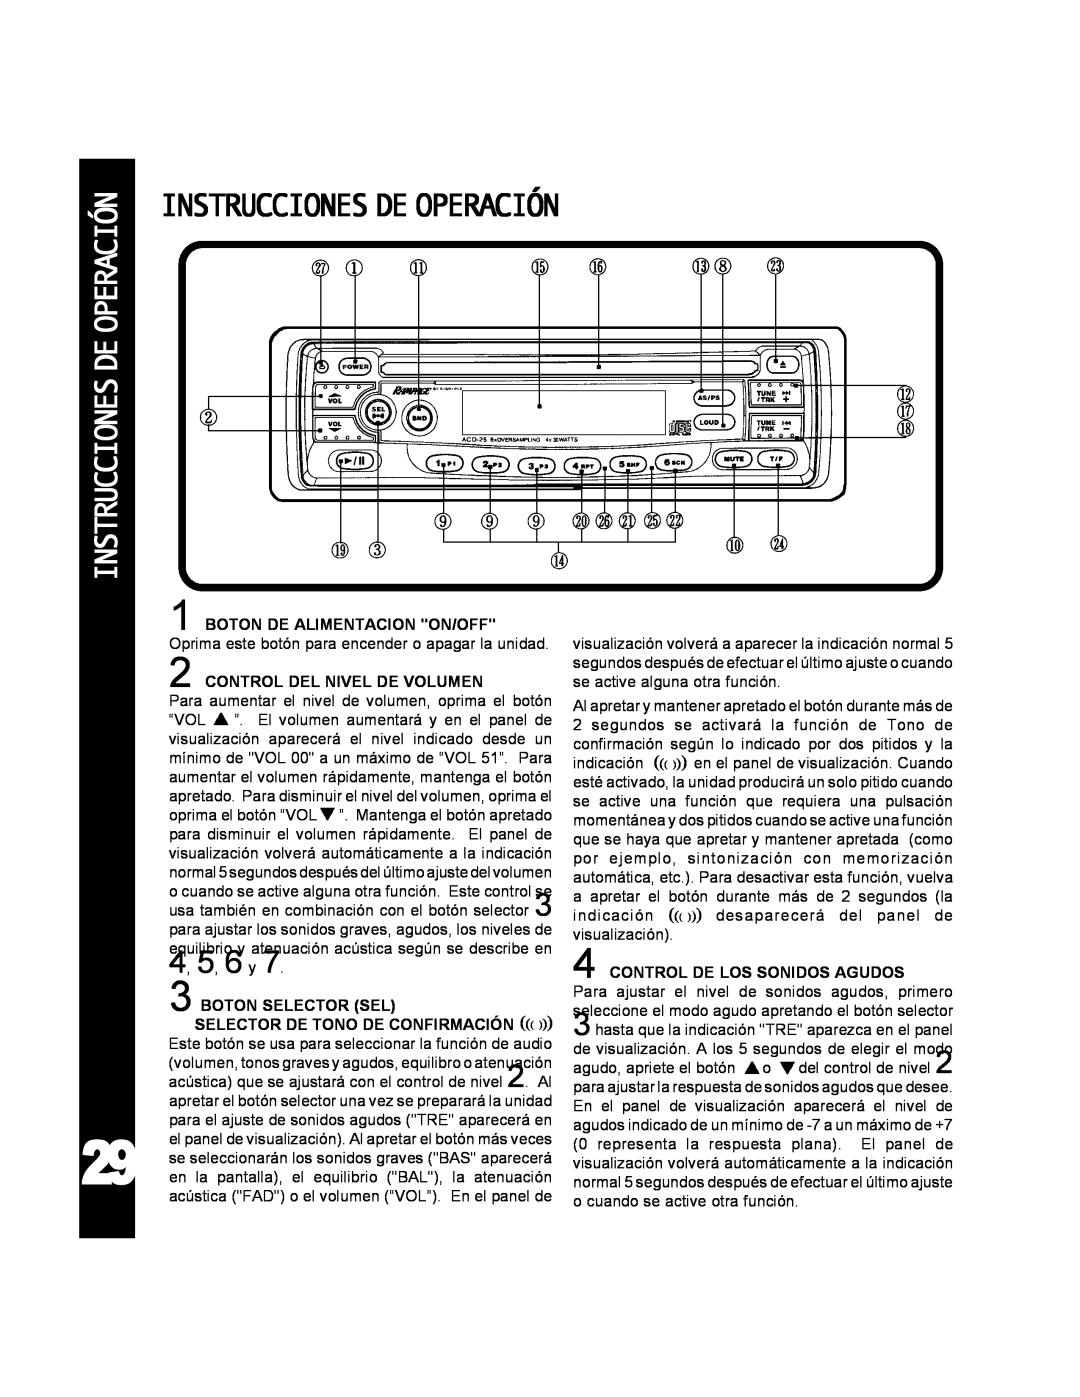 Audiovox ACD-25 manual Instruccionesdeoperación 